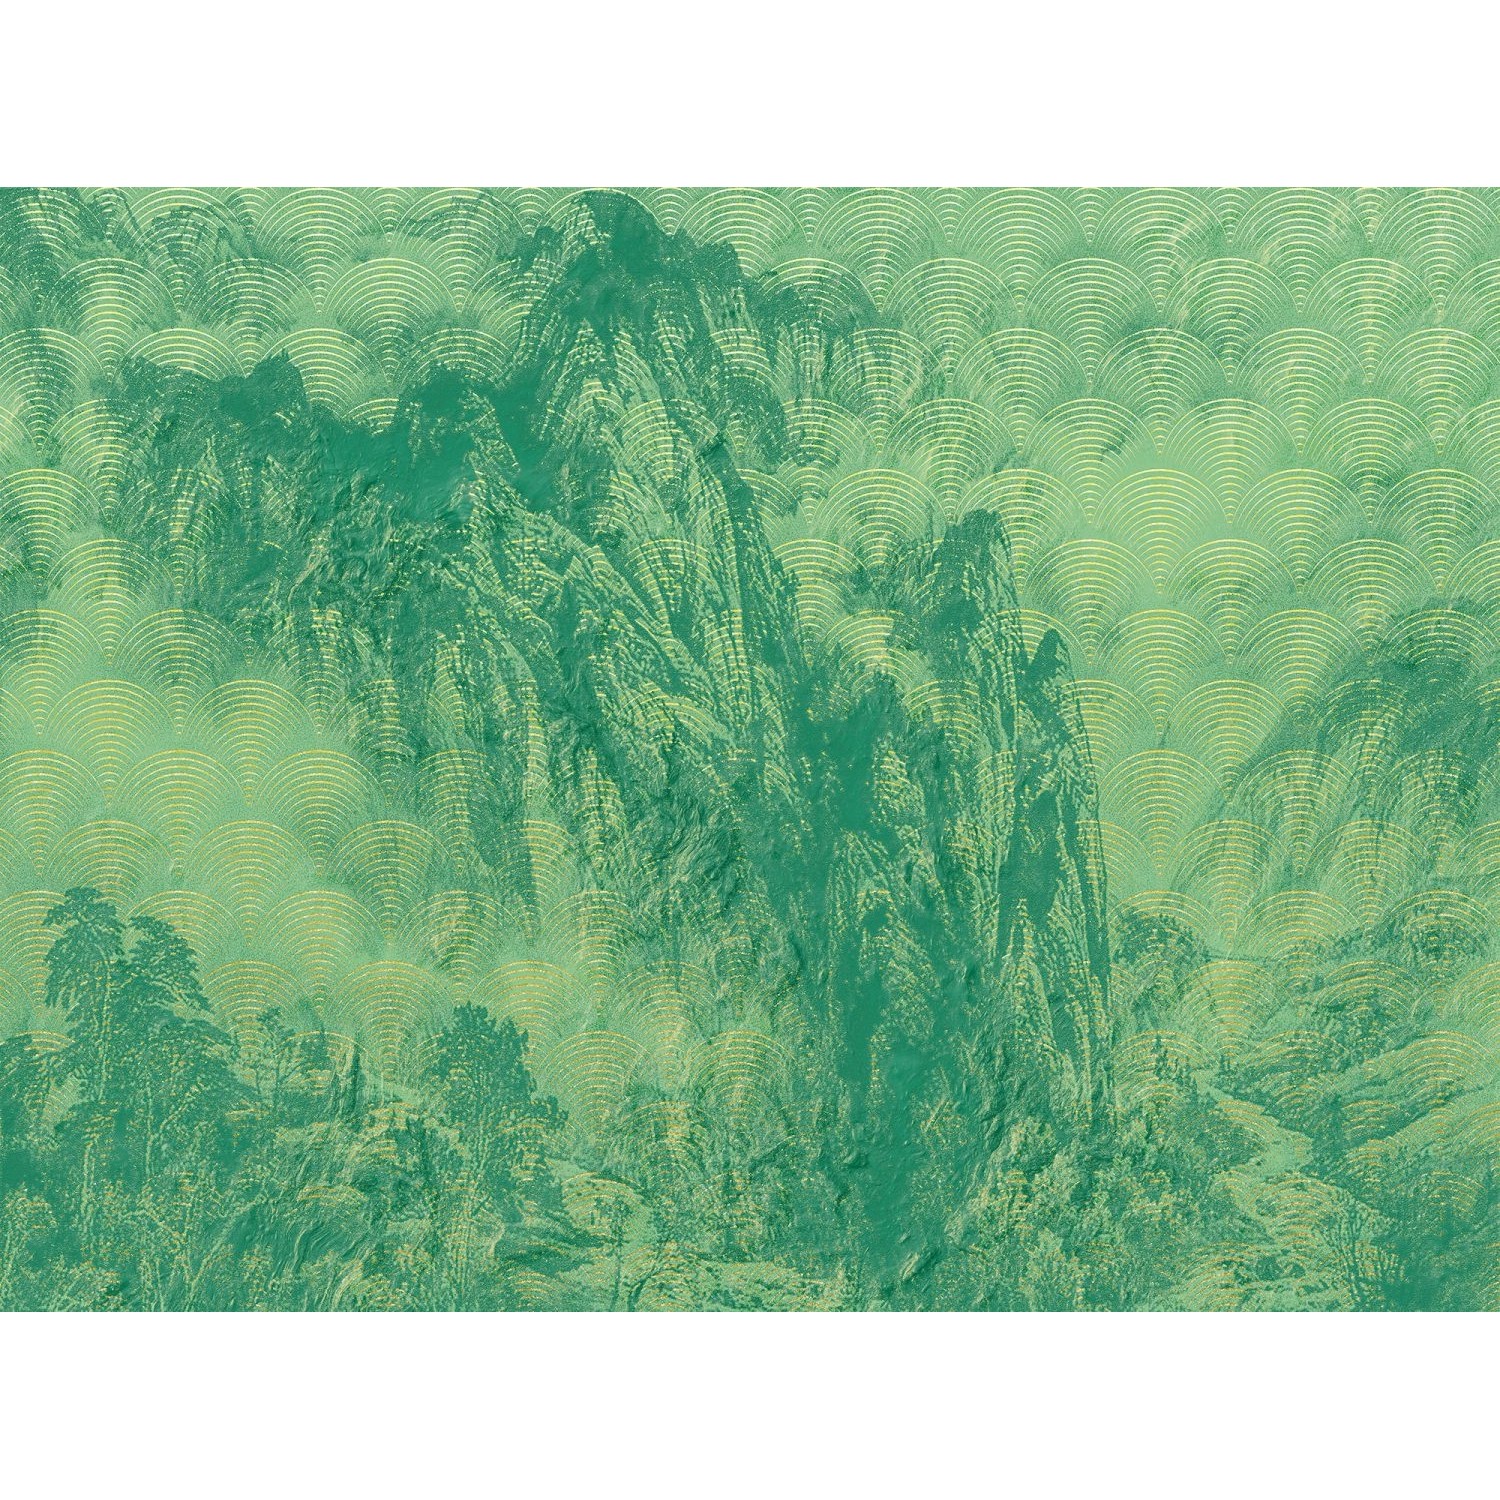 Sanders & Sanders Fototapete Künstlerisch Grün 400 x 280 cm 611856 günstig online kaufen